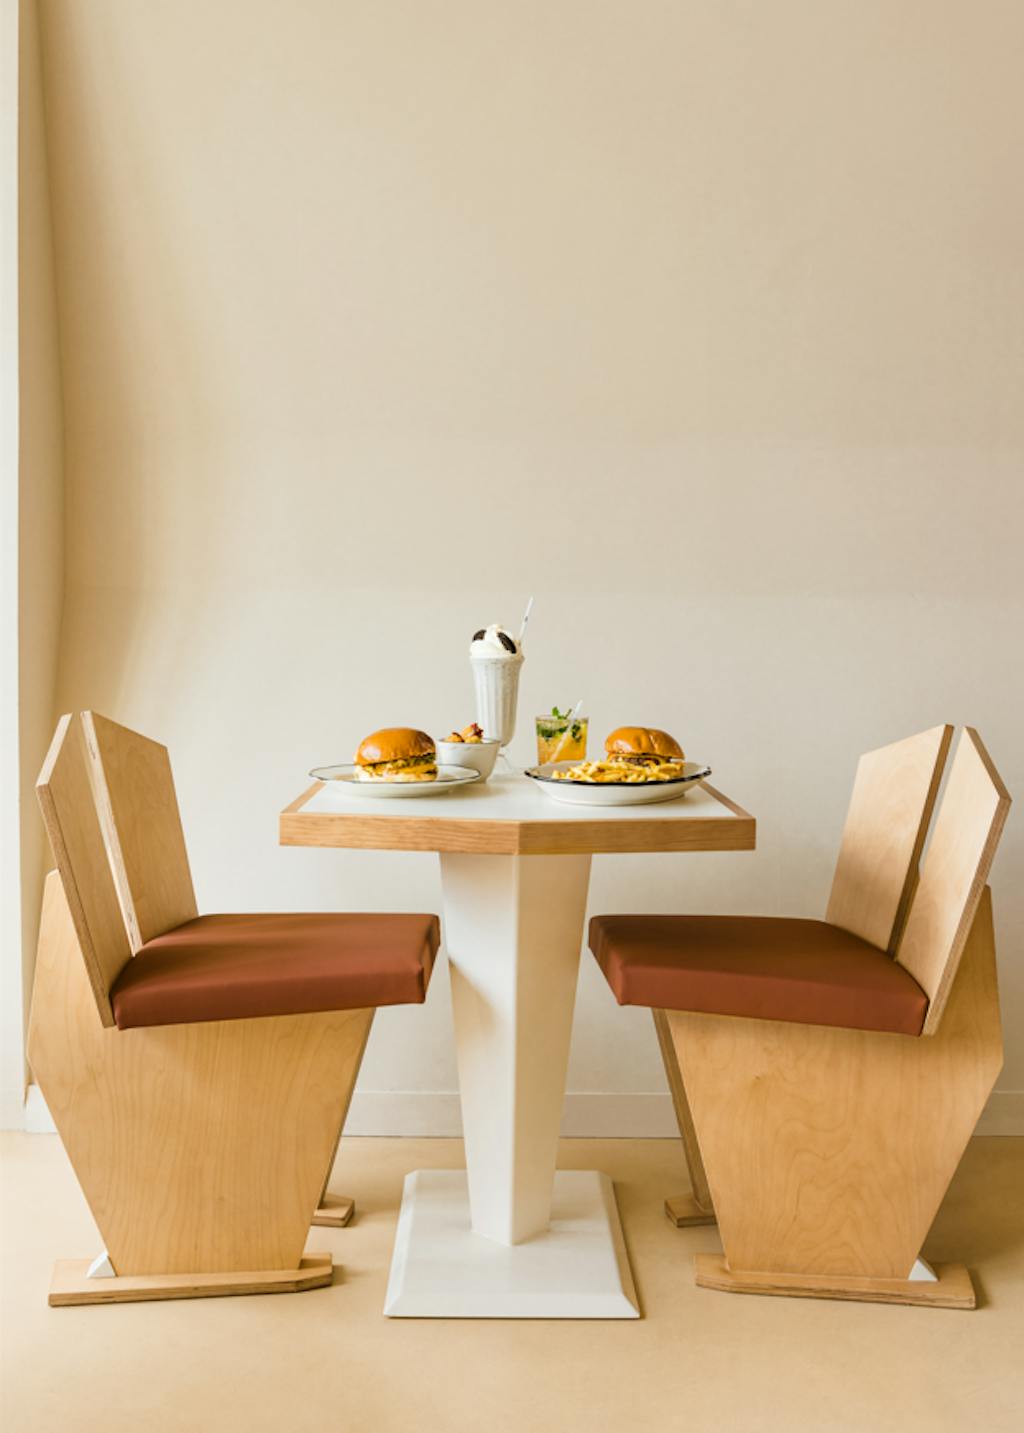 Un table avec des burgers de PNY